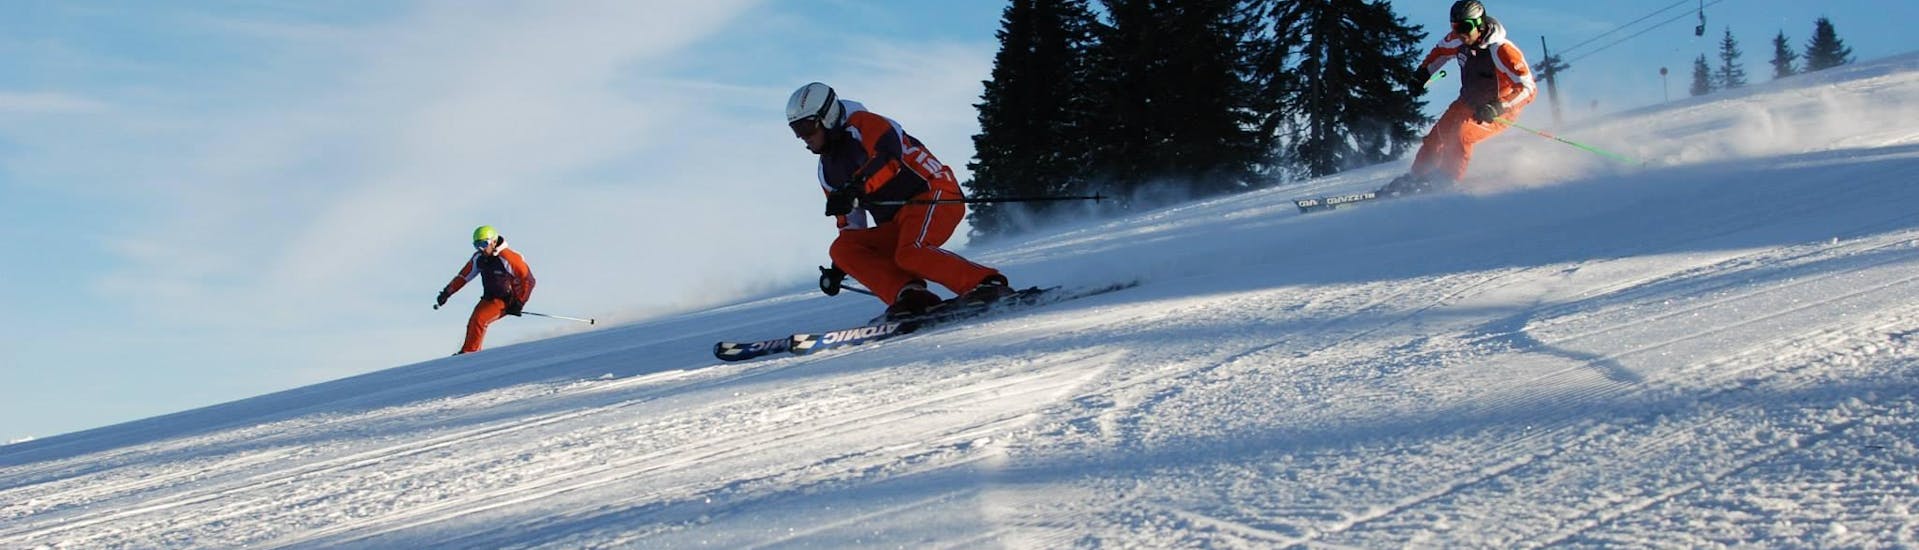 Cours de ski "All-In-One" pour Adultes - Tous niveaux avec Ecole de ski Toni Gruber.